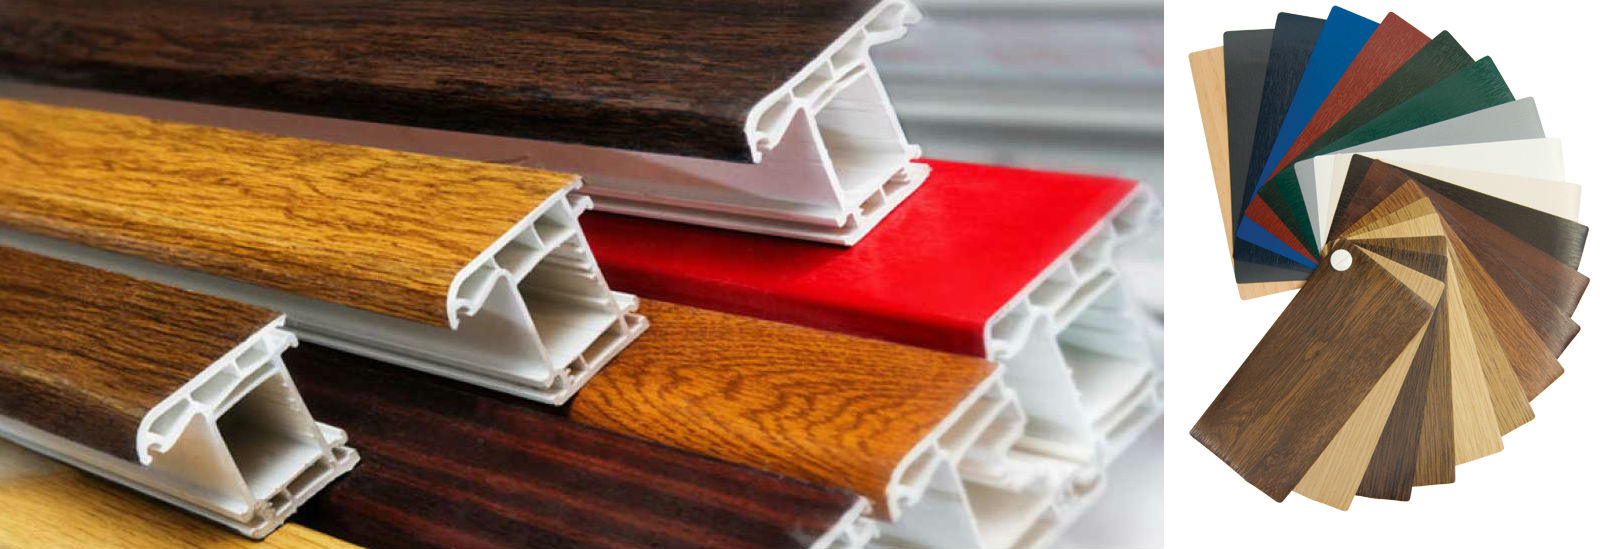 Ламинирование - наиболее часто использующийся метод "окраски" белого профила ПВХ. Благодаря использованию цветных пленок, можно без сильных дополнительных затрат имитировать деревянные окна